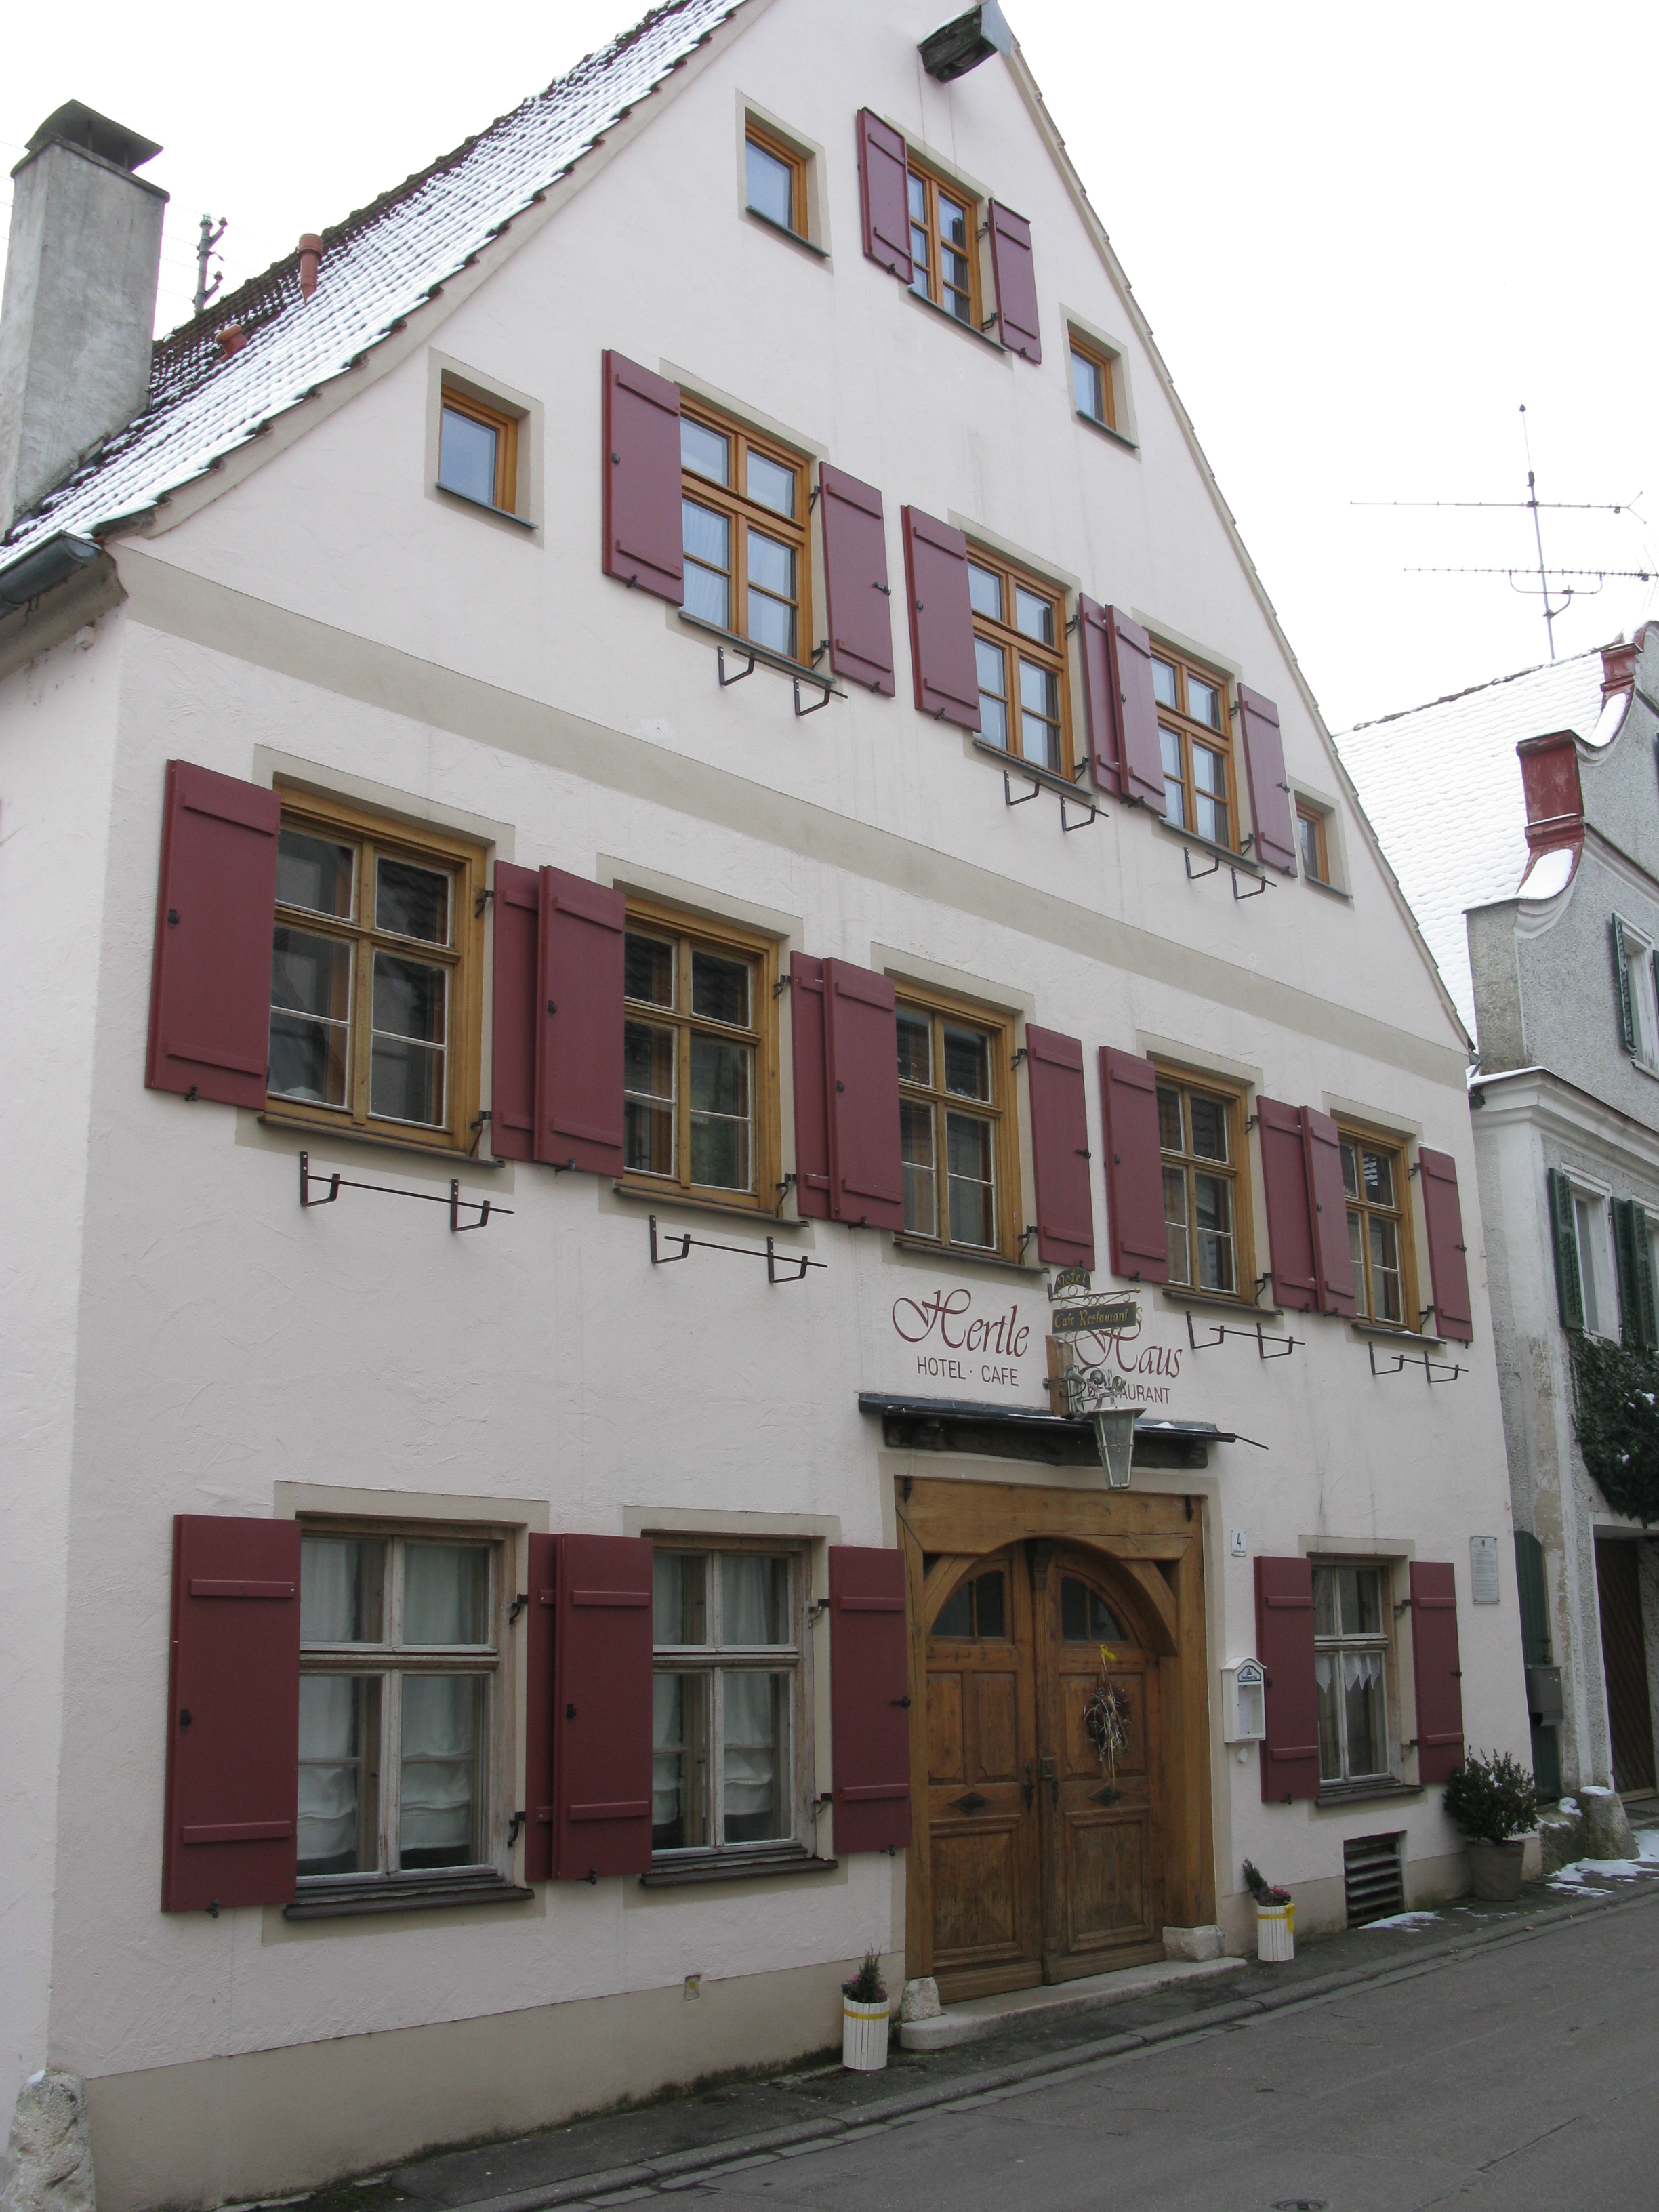 Die besondere Qualität der denkmalpreisgekrönten Sanierung des ca. 500 Jahre alten Wohn- und Geschäftshauses in Harburg liegt im Erhalt und der Wiederverwendung historischer Bauteile.